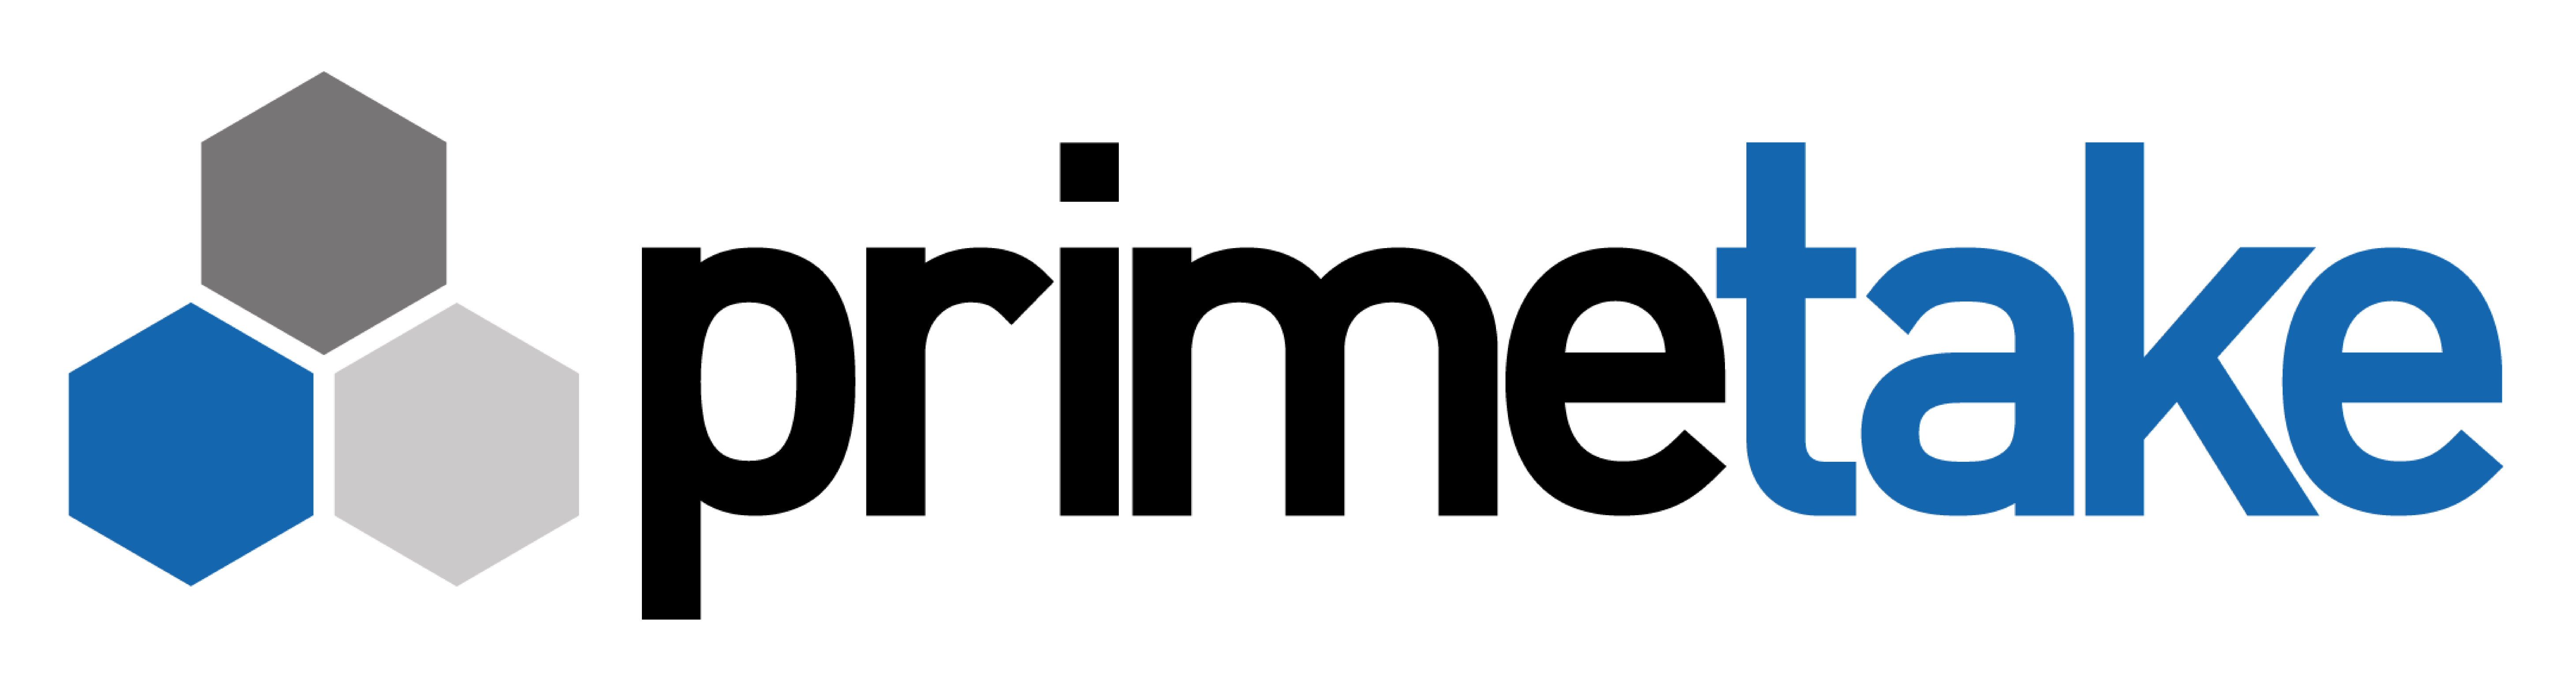 Primetake Logo